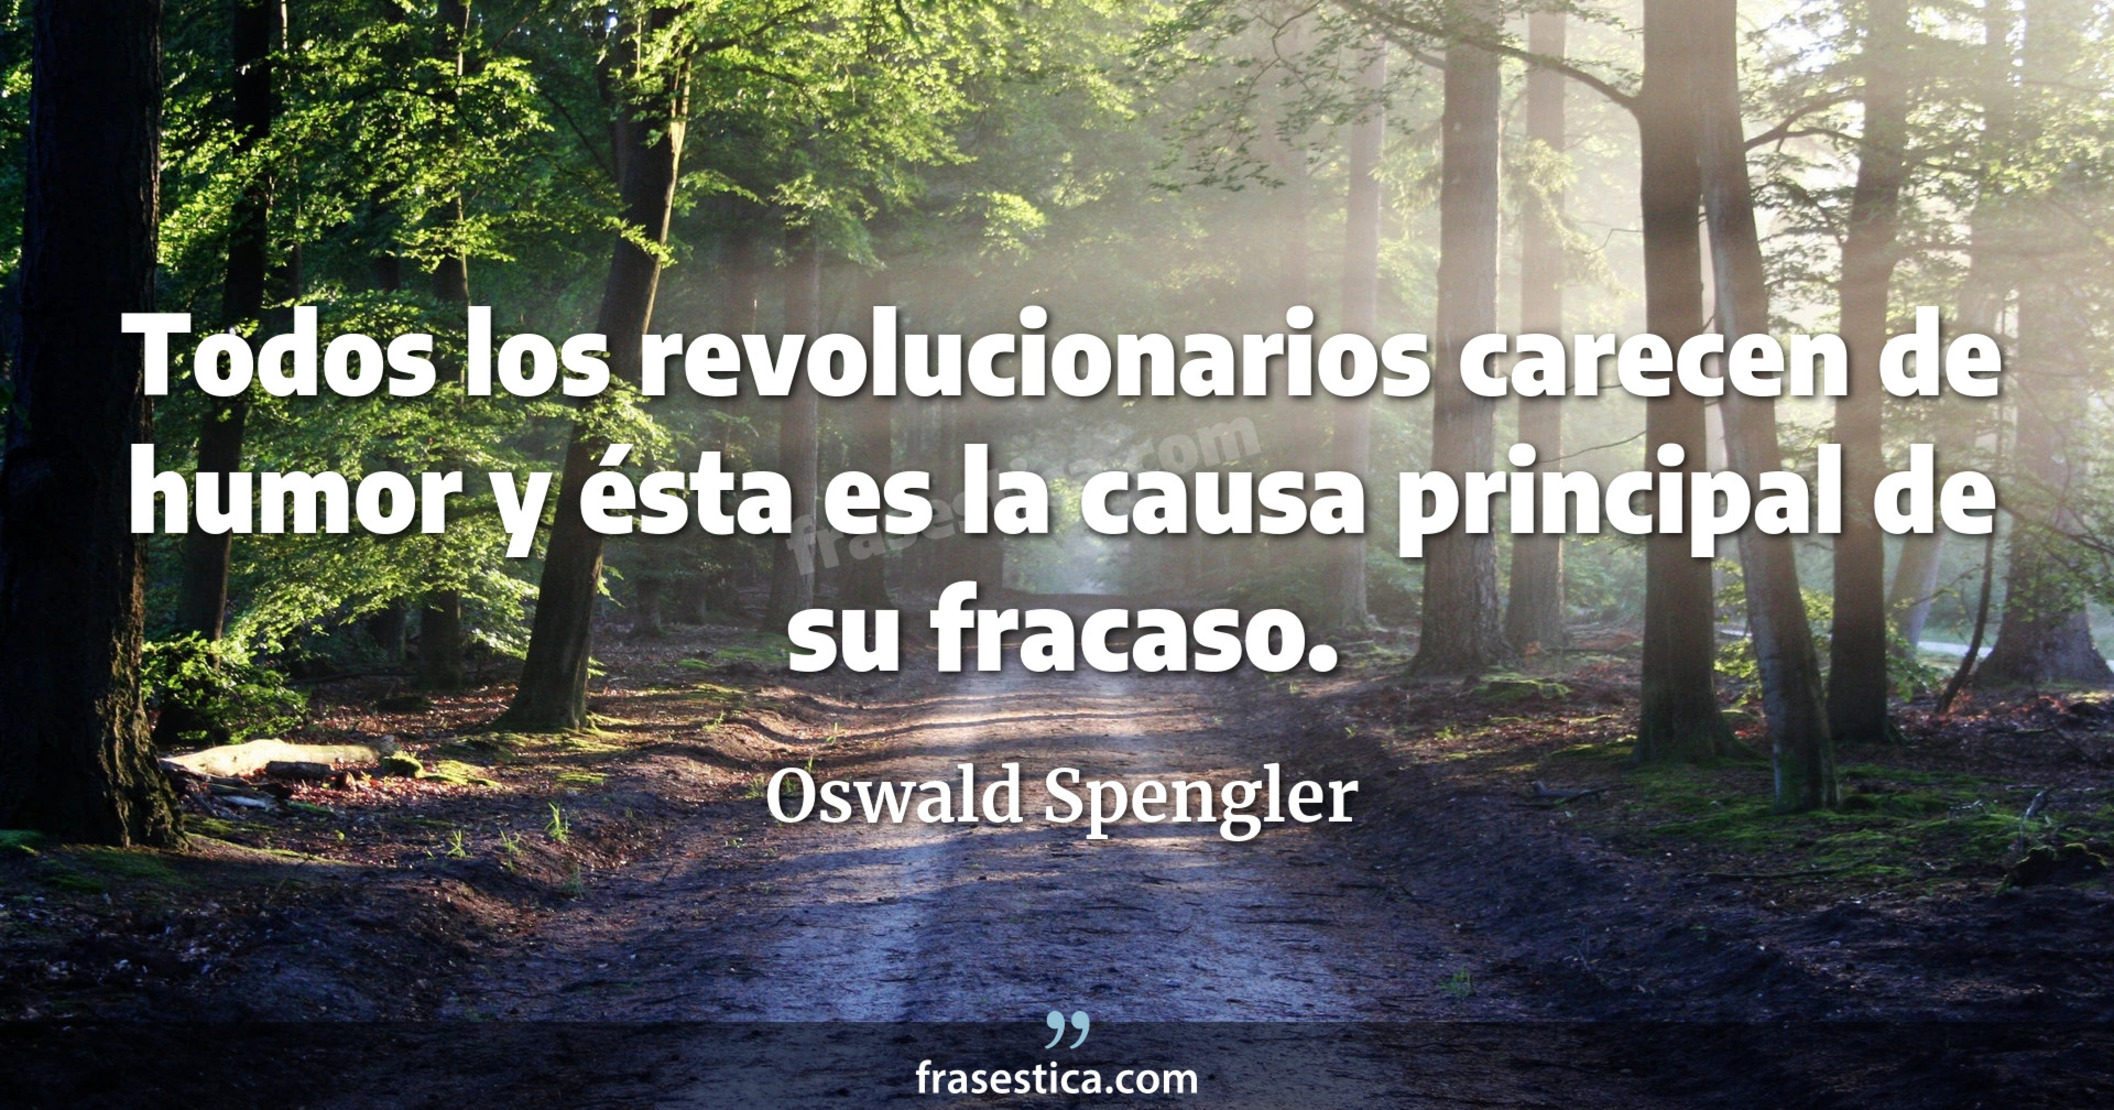 Todos los revolucionarios carecen de humor y ésta es la causa principal de su fracaso. - Oswald Spengler